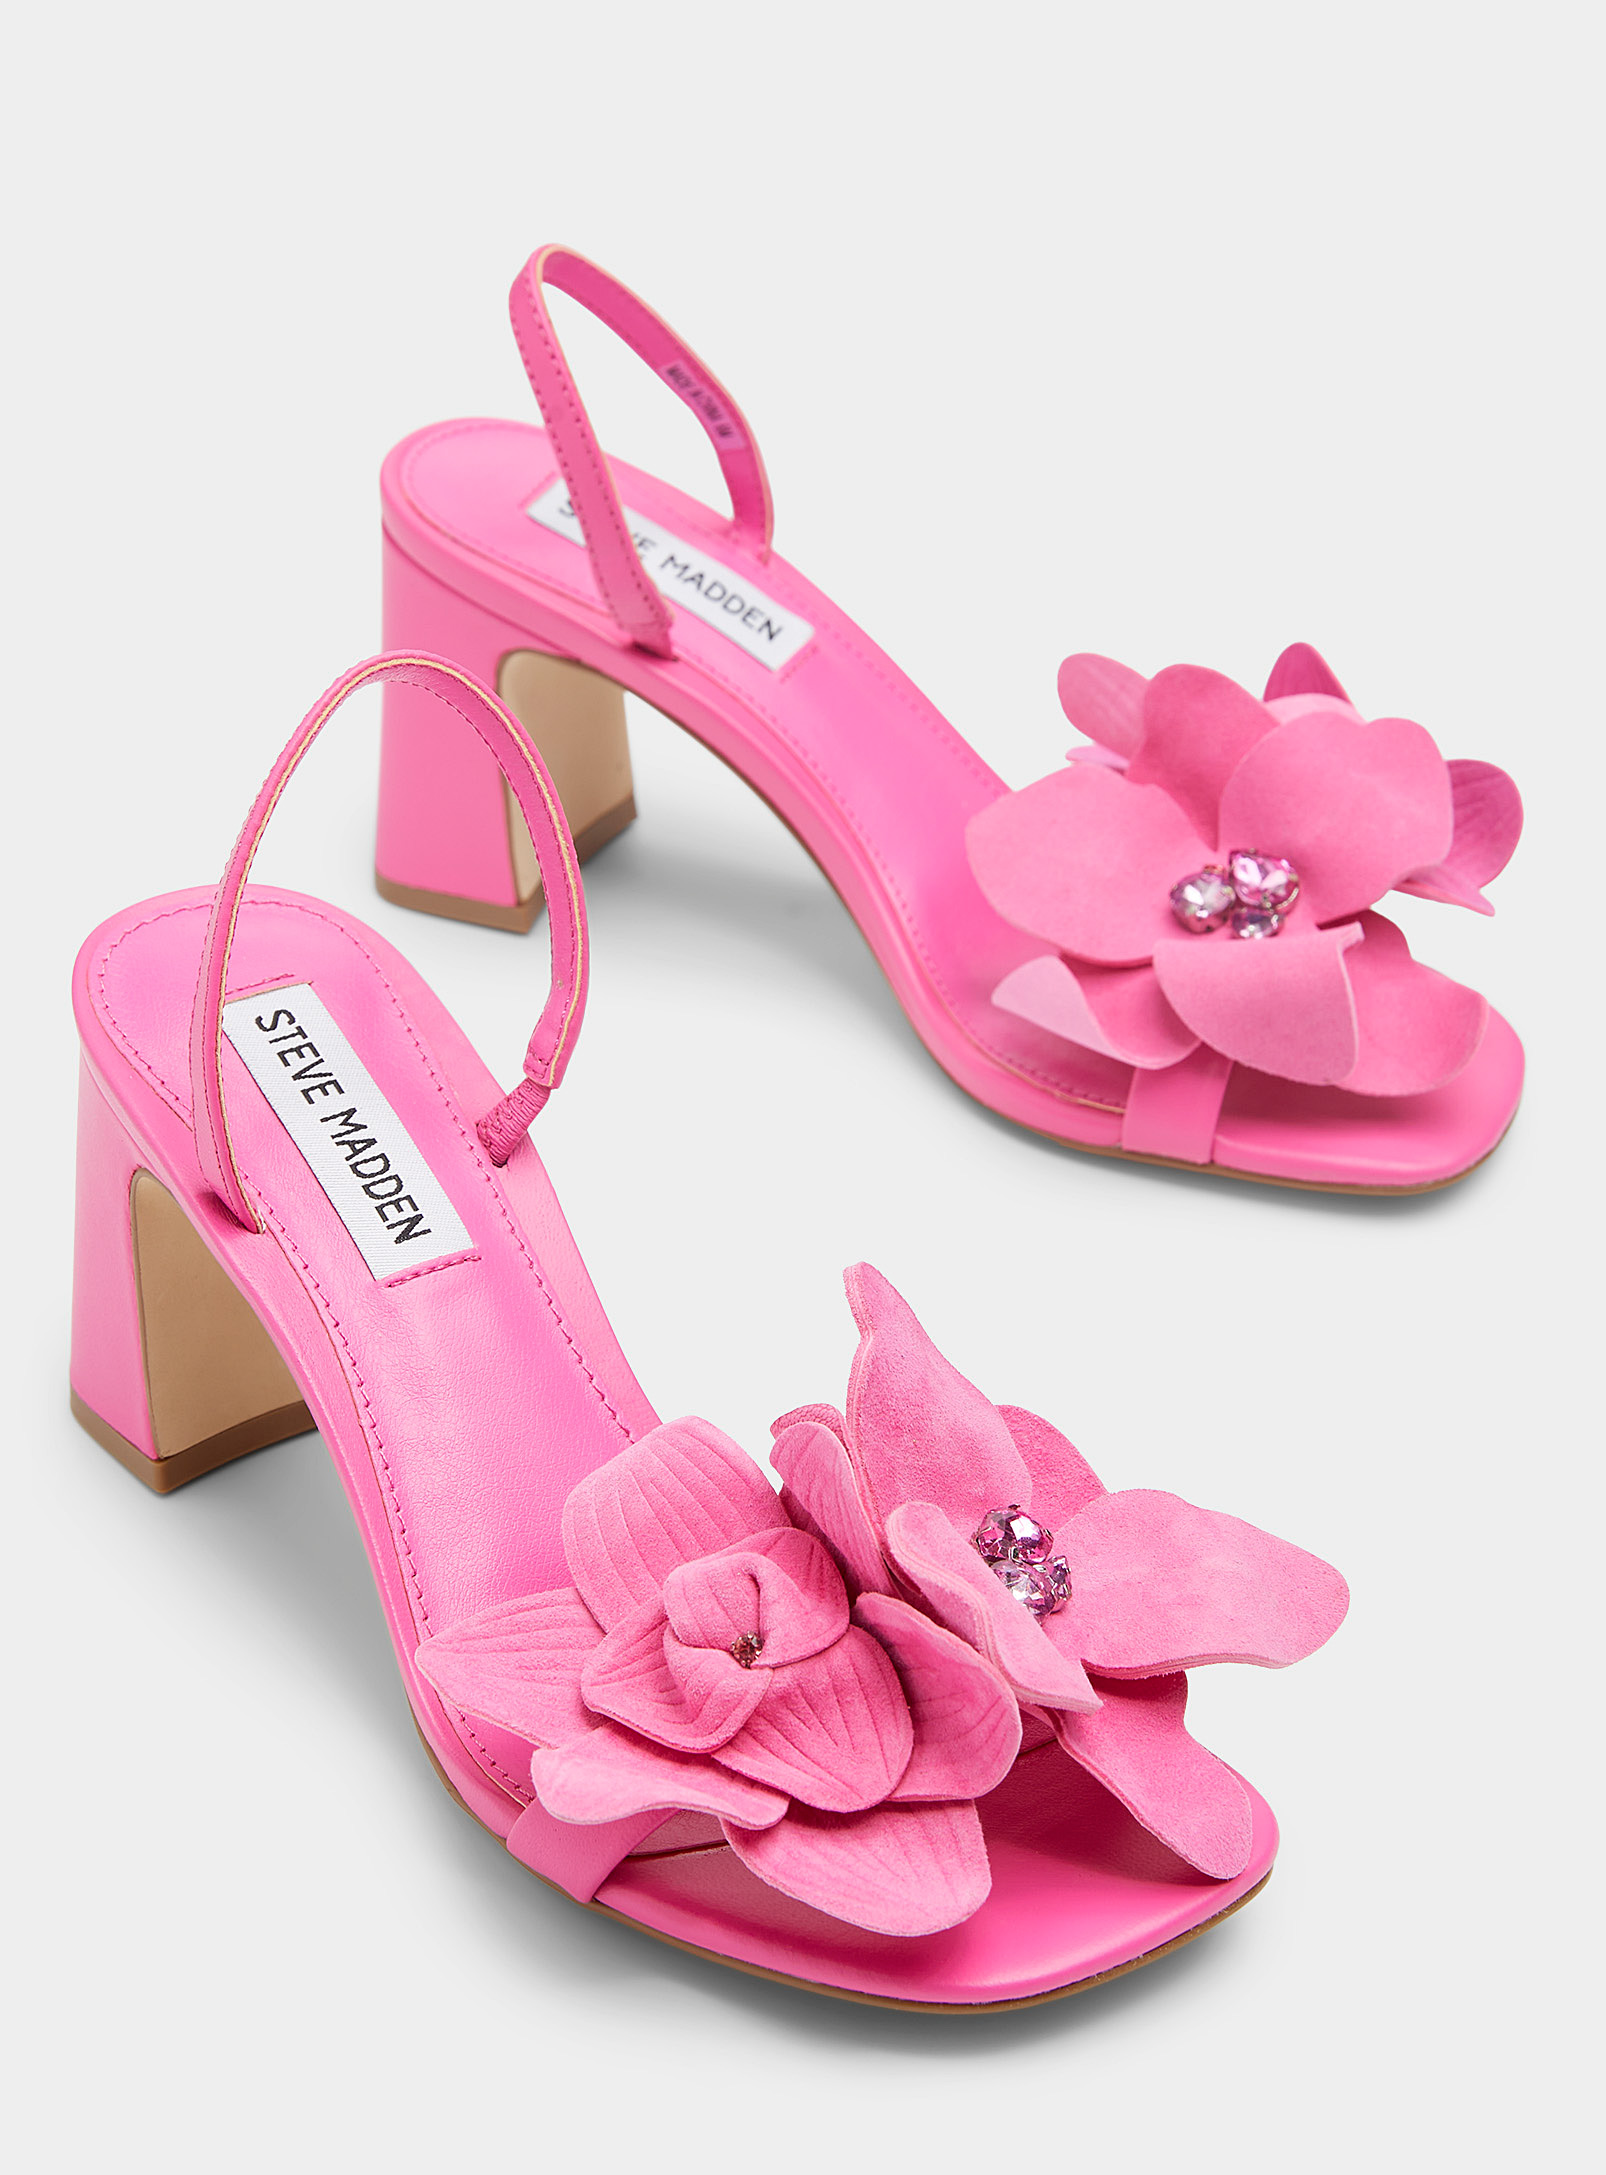 Steve Madden Women's Farrie Embellished Floral Dress Sandals In Pink